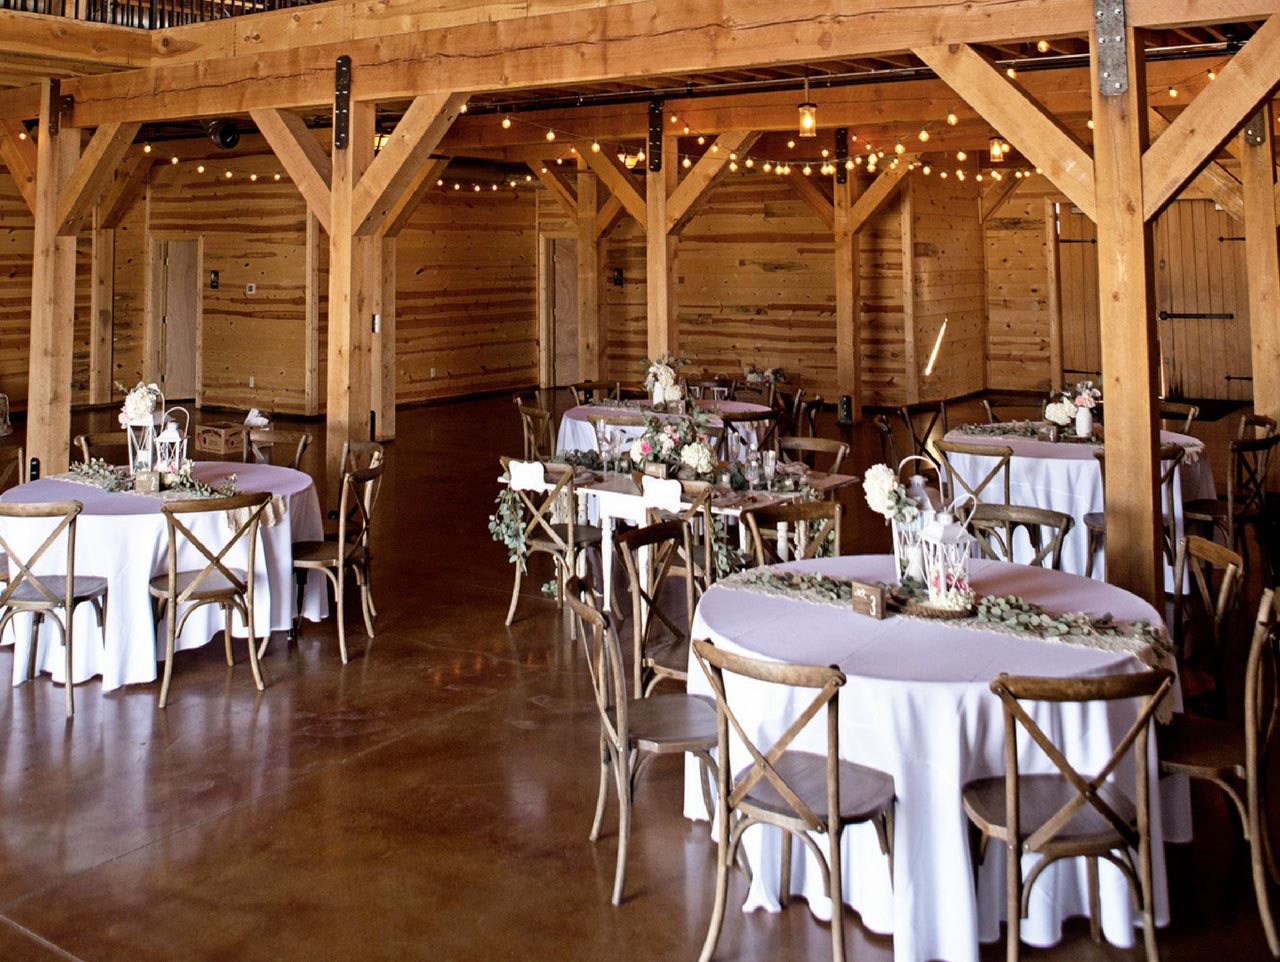 DIY-Wedding-Centerpiece-Ideas-For-a-Rustic-Barn-Wedding-step3